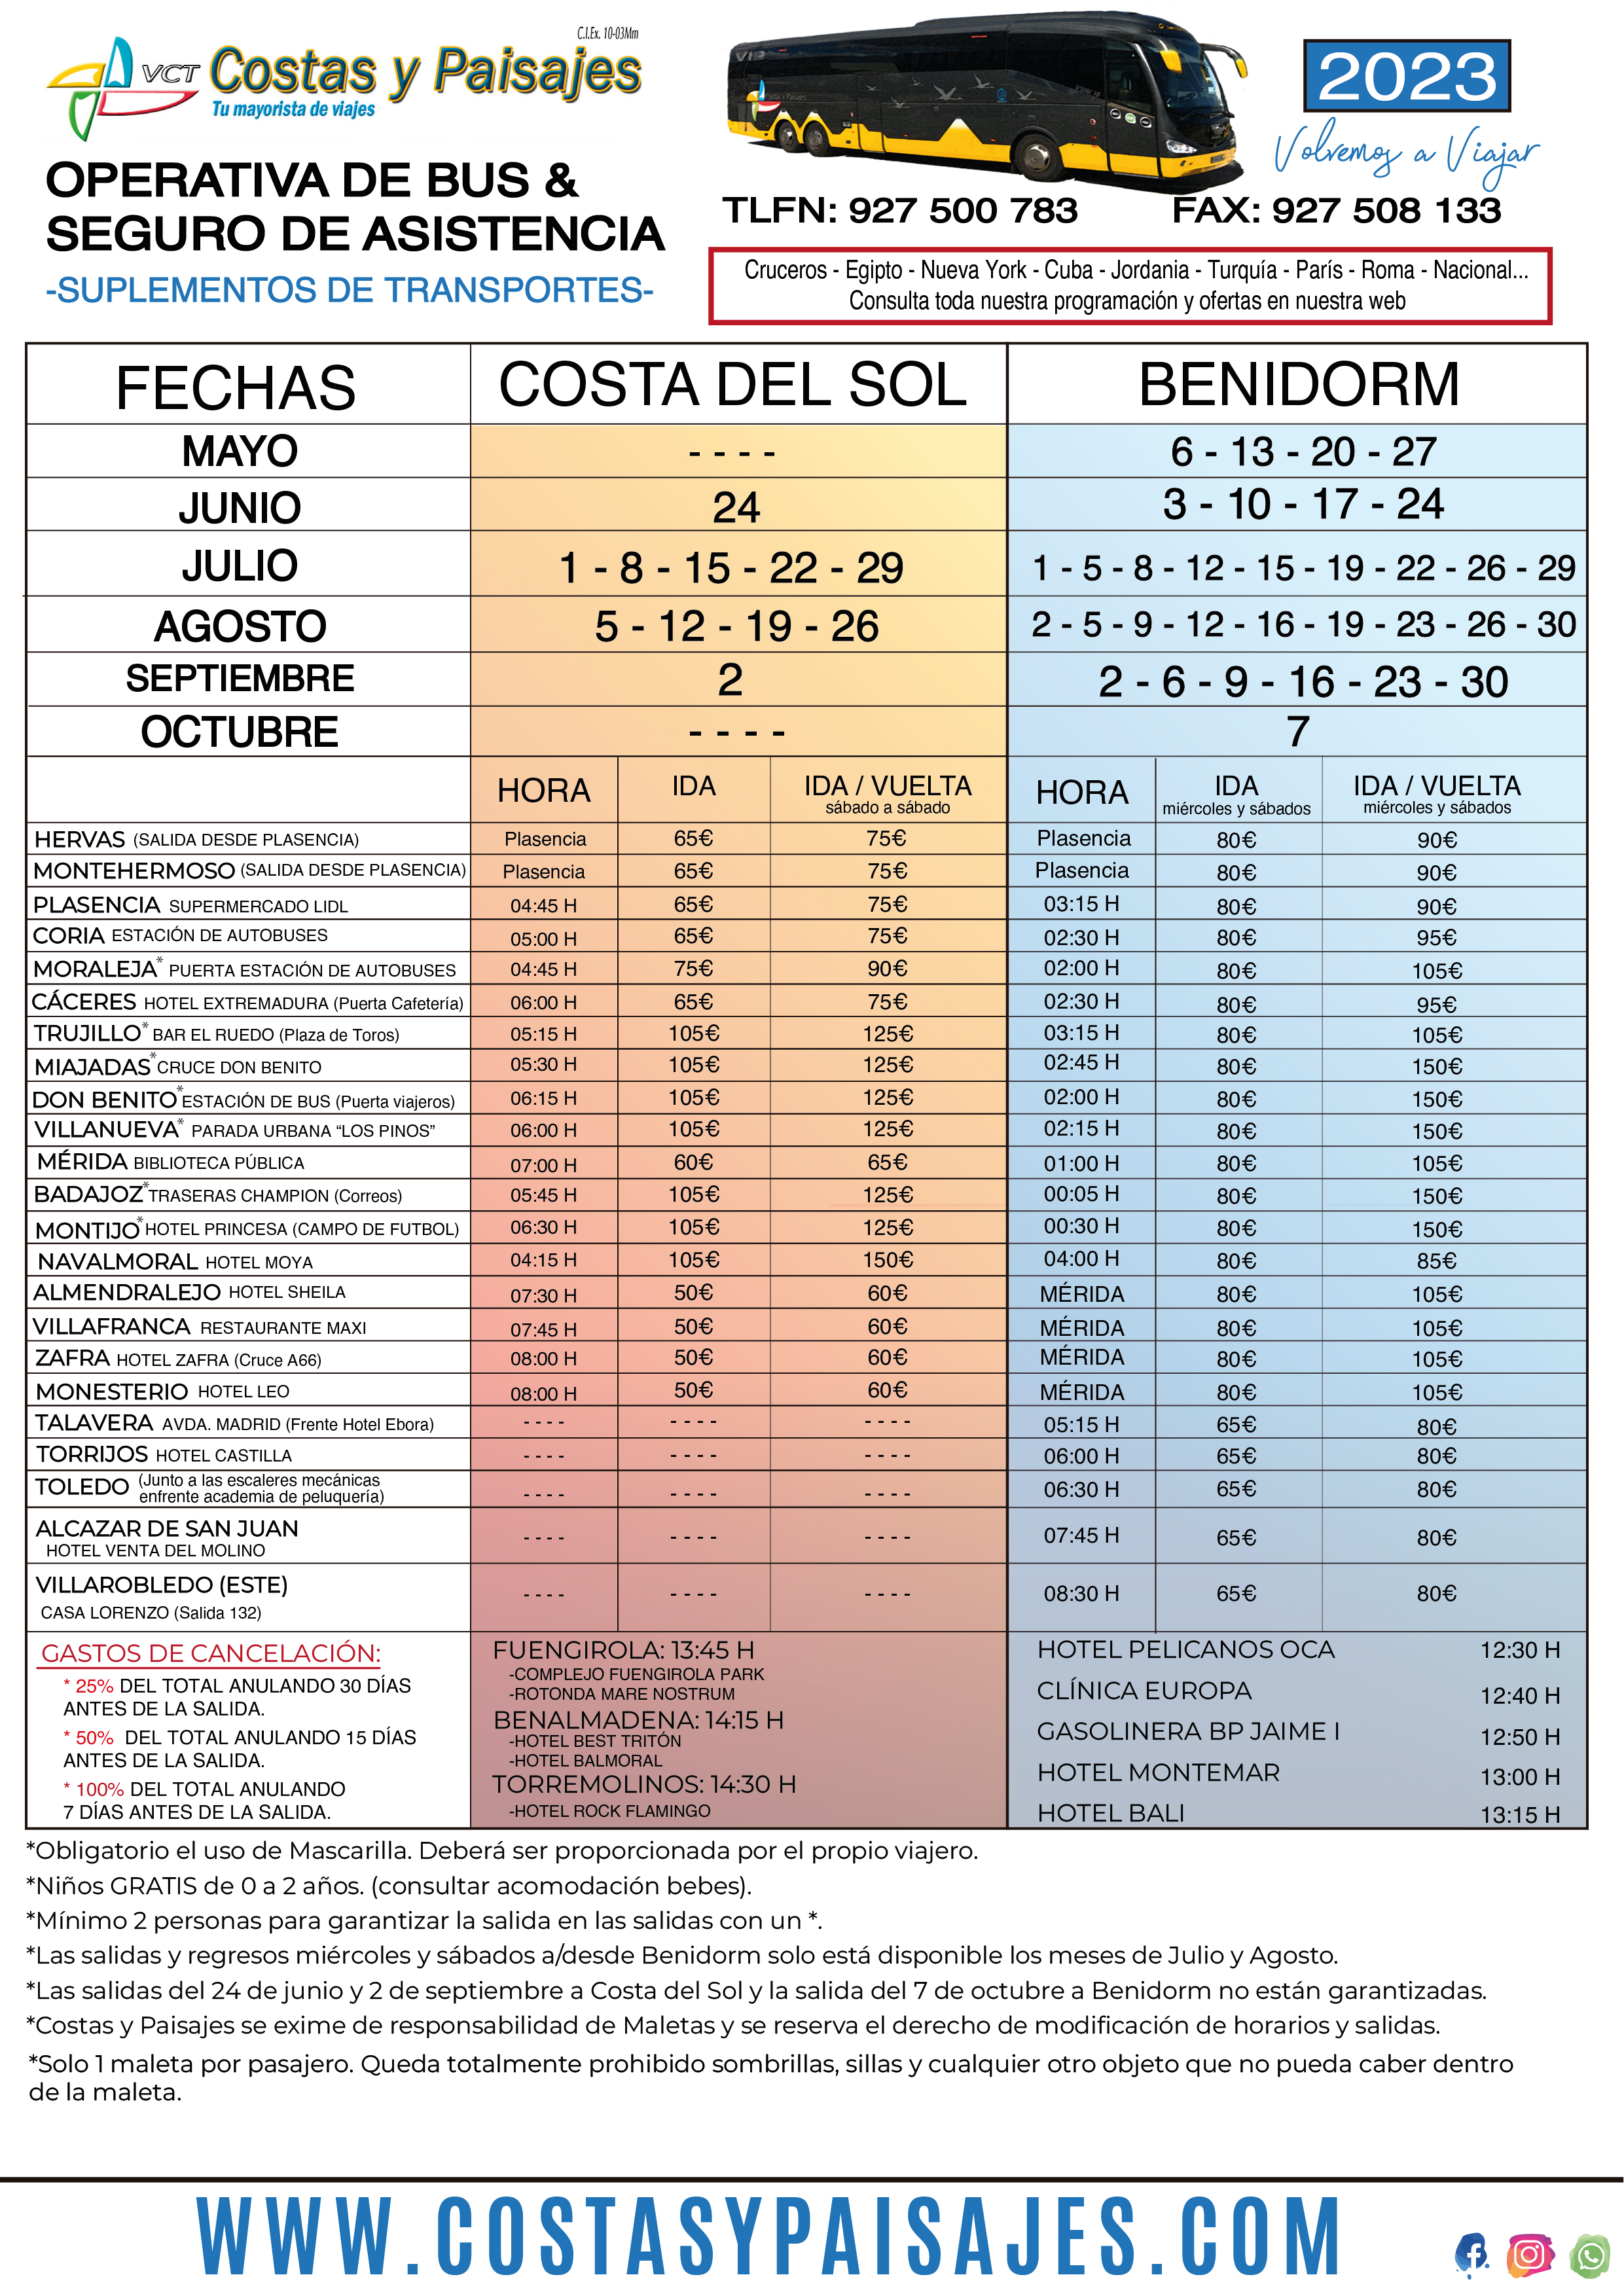 Operativa Verano 2023 Costa del Sol y Benidorm